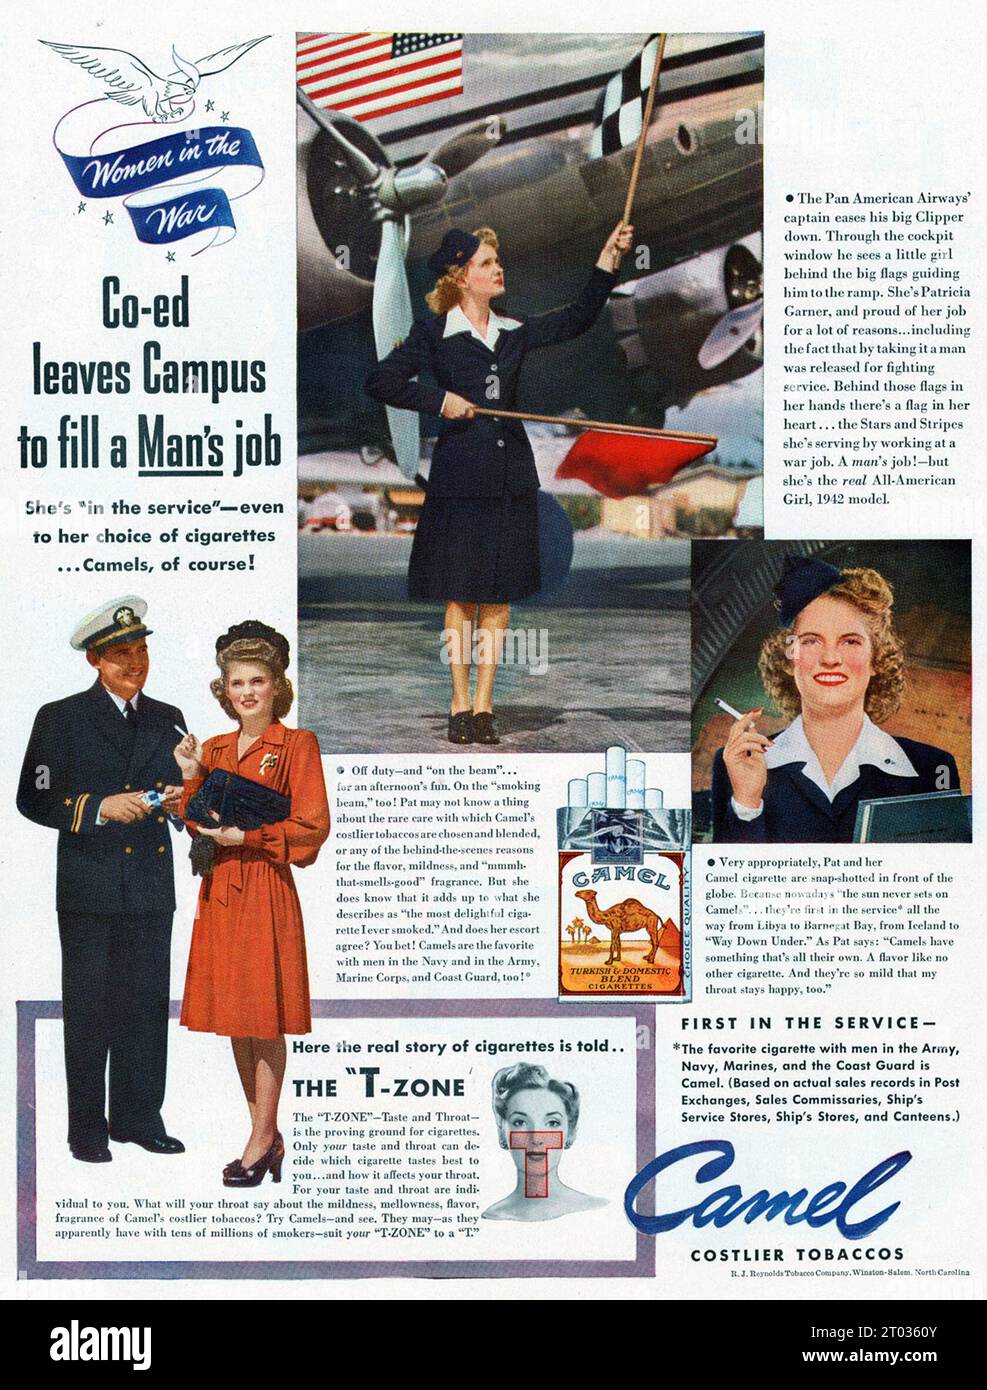 Zigarettenwerbung für Frauen im Krieg, die eine Frau zeigt, die zivile Flugzeuge signalisiert. Stockfoto